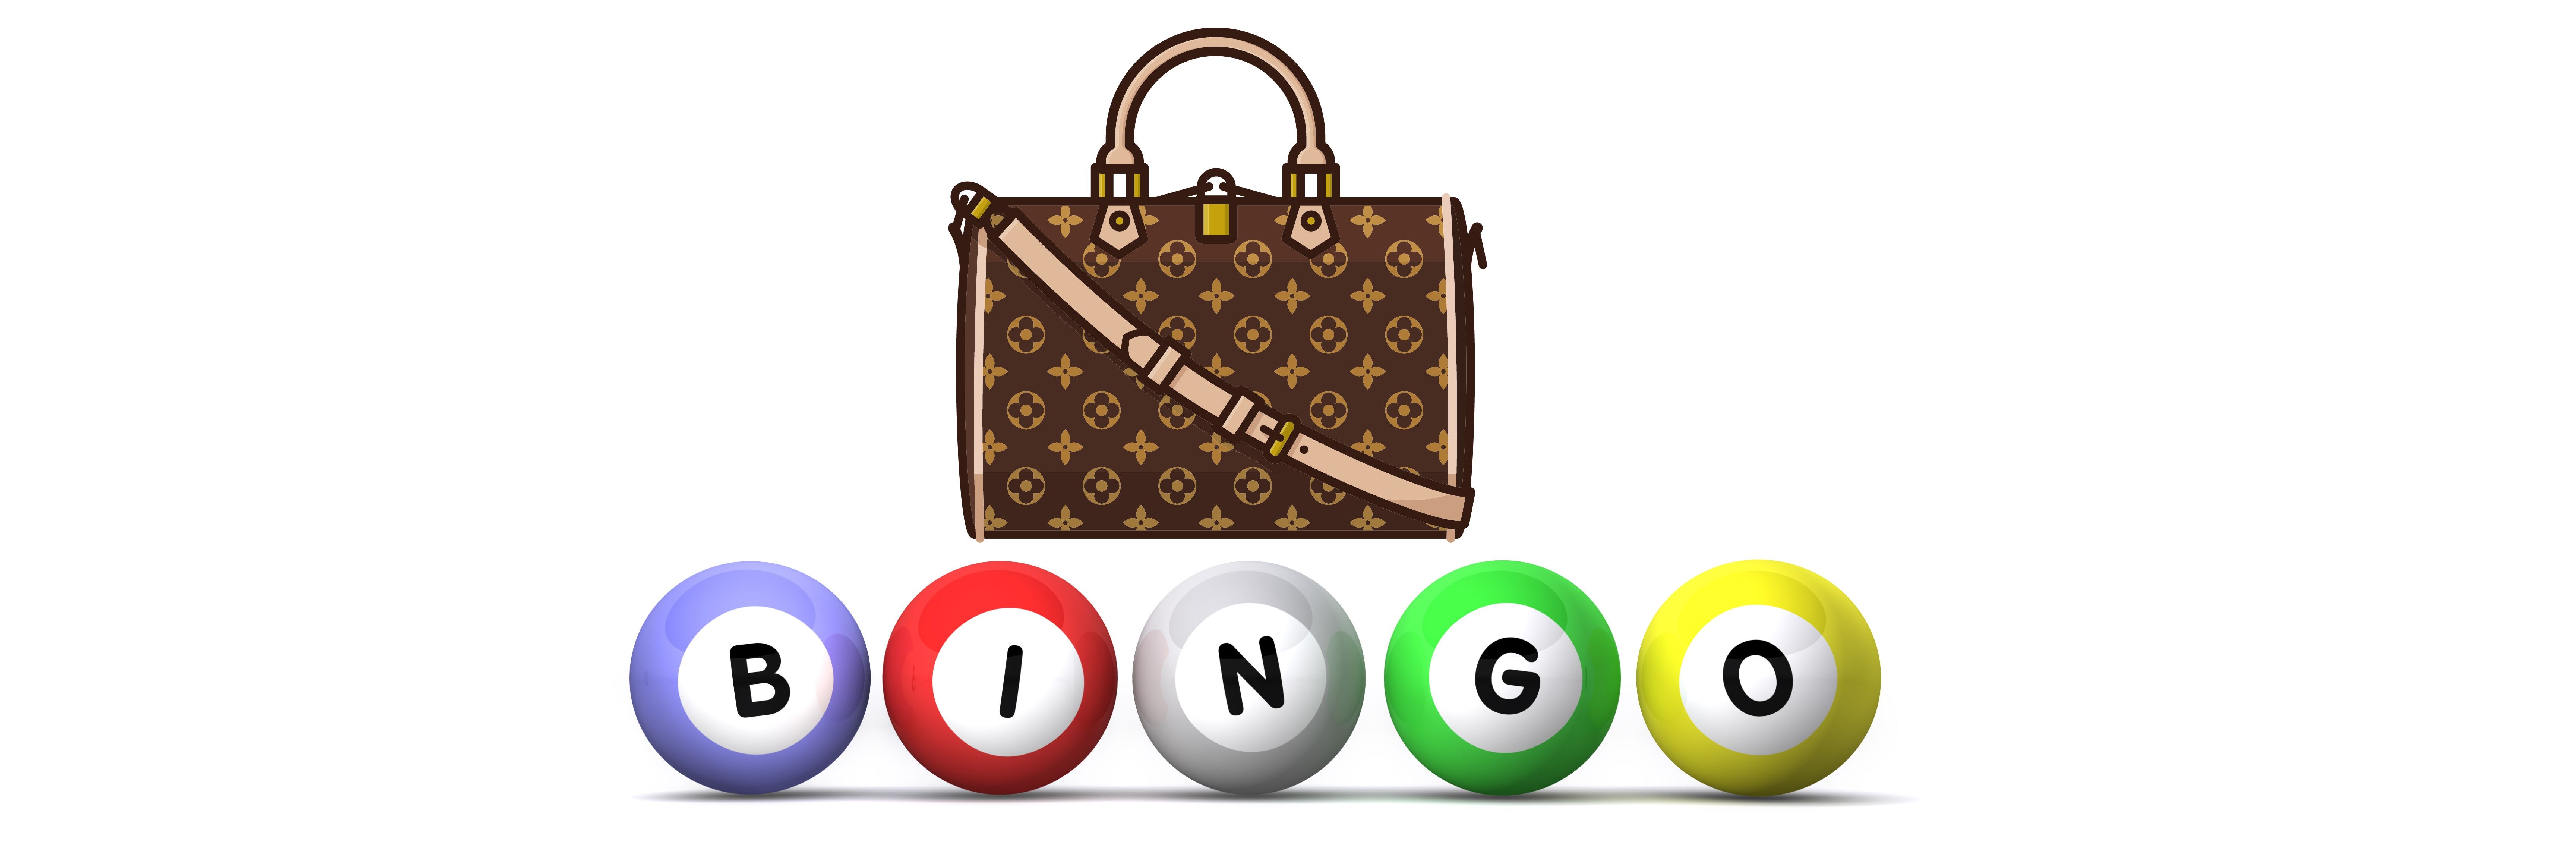 AGCS PTO Designer Bag Bingo Reservations- SOLD OUT!! - Cheddar Up